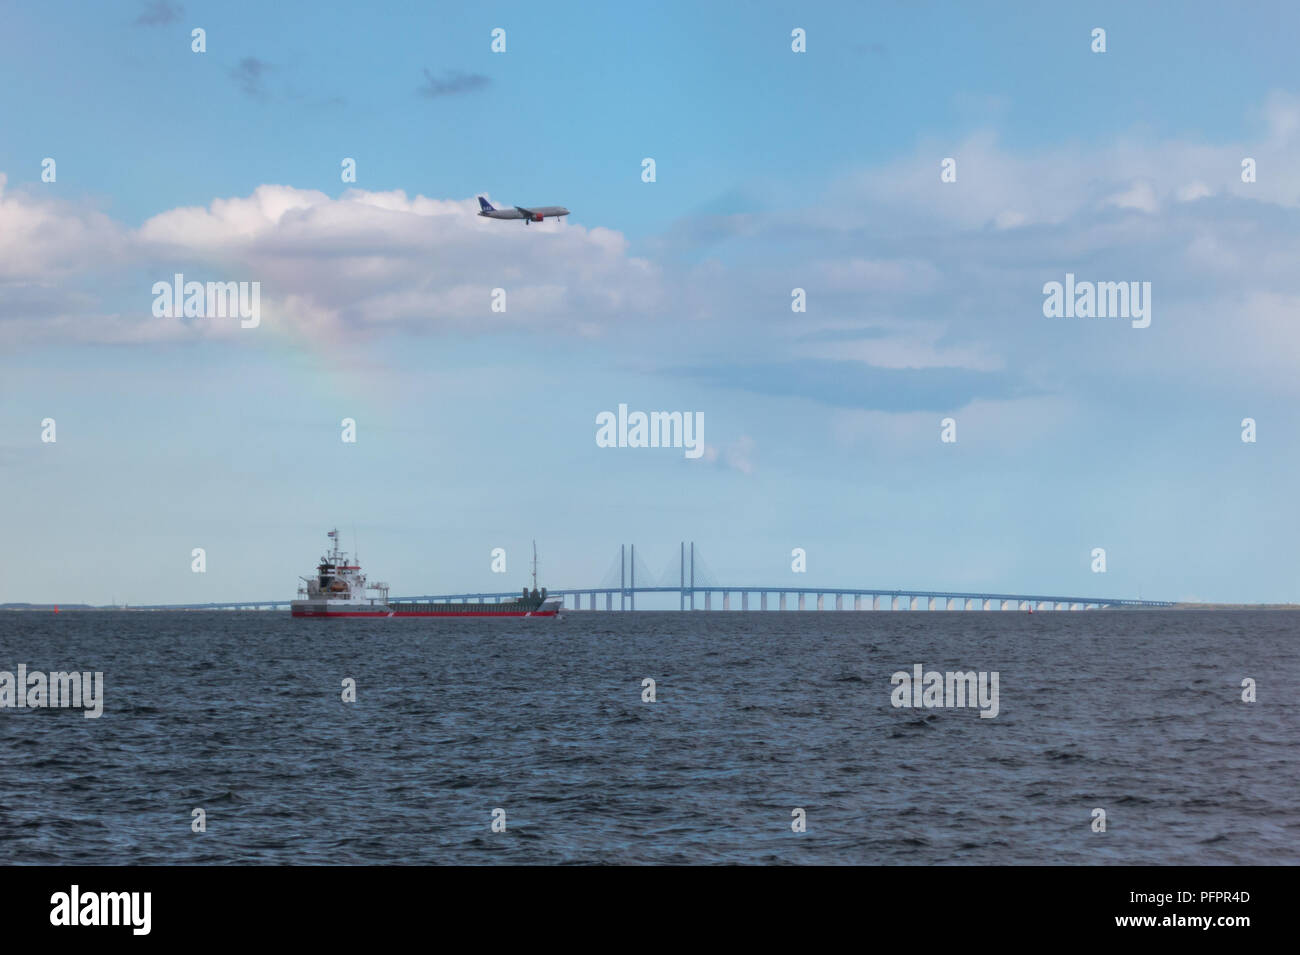 Fotografía de un buque, aeronave y el puente de la autopista, mostrando los diferentes modos de transporte y medios de comercio mundial provocando grandes emisiones de carbono Foto de stock